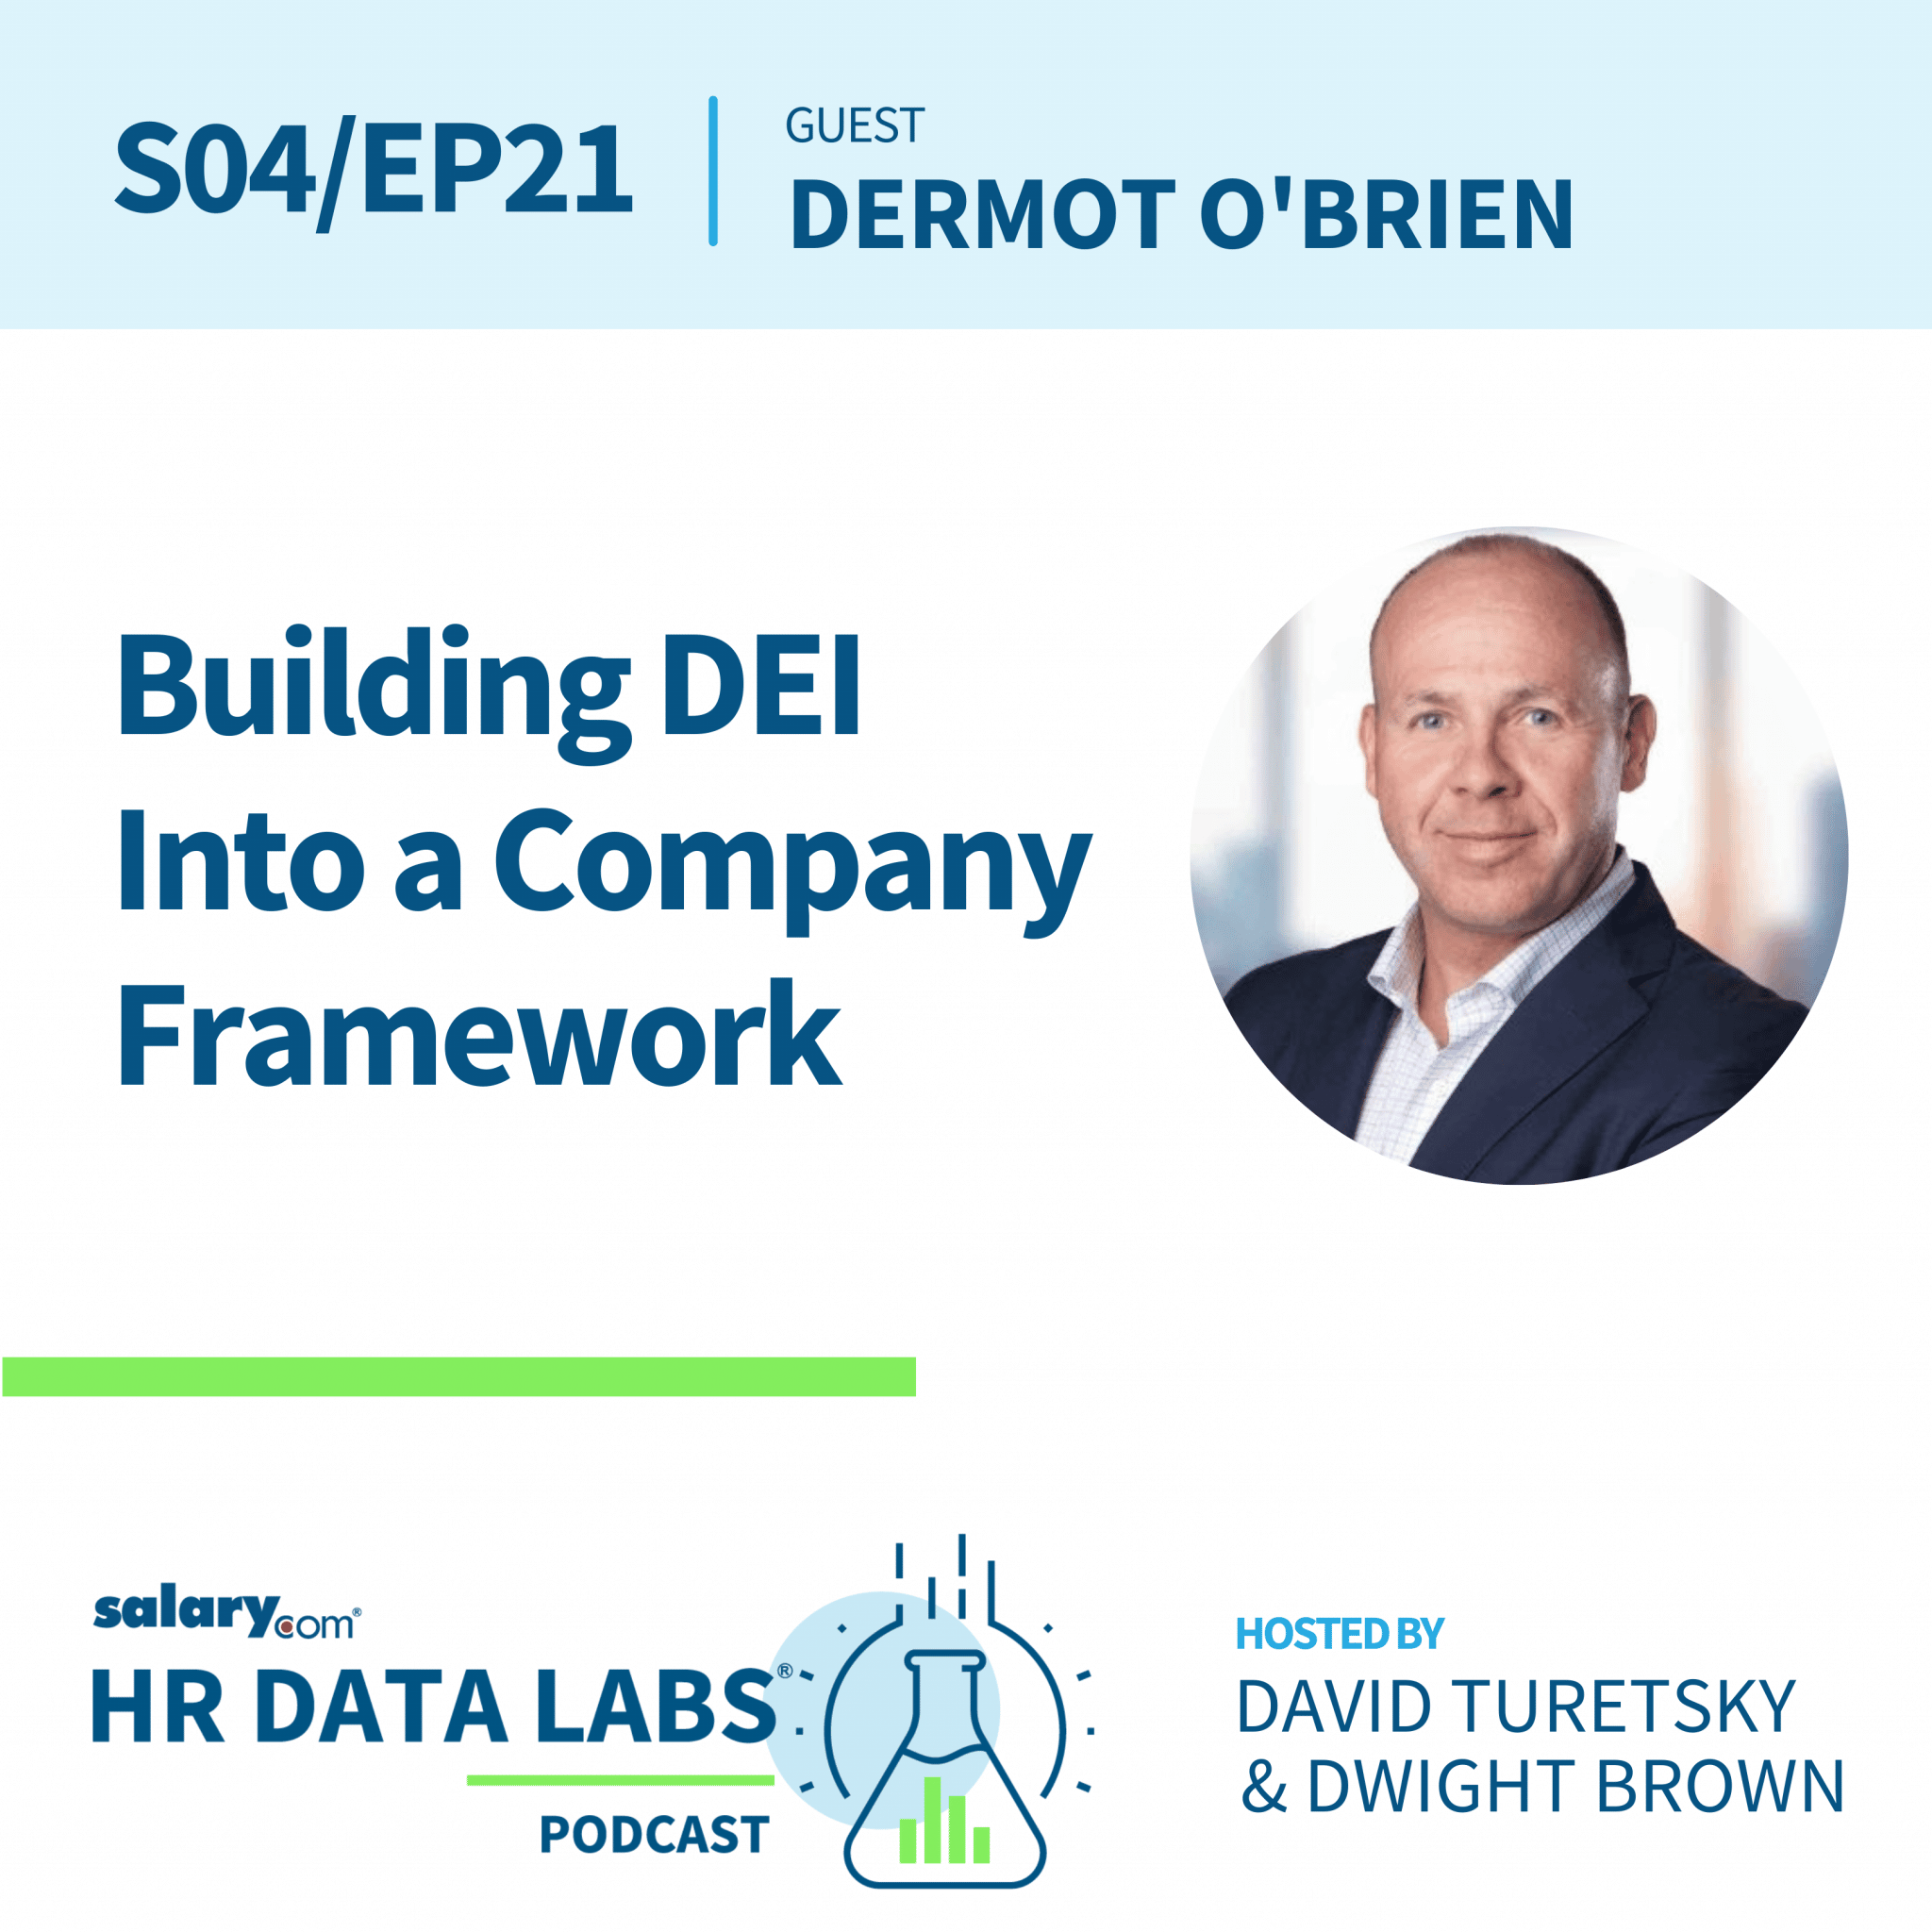 Dermot O’Brien – Building DEI Into a Company Framework